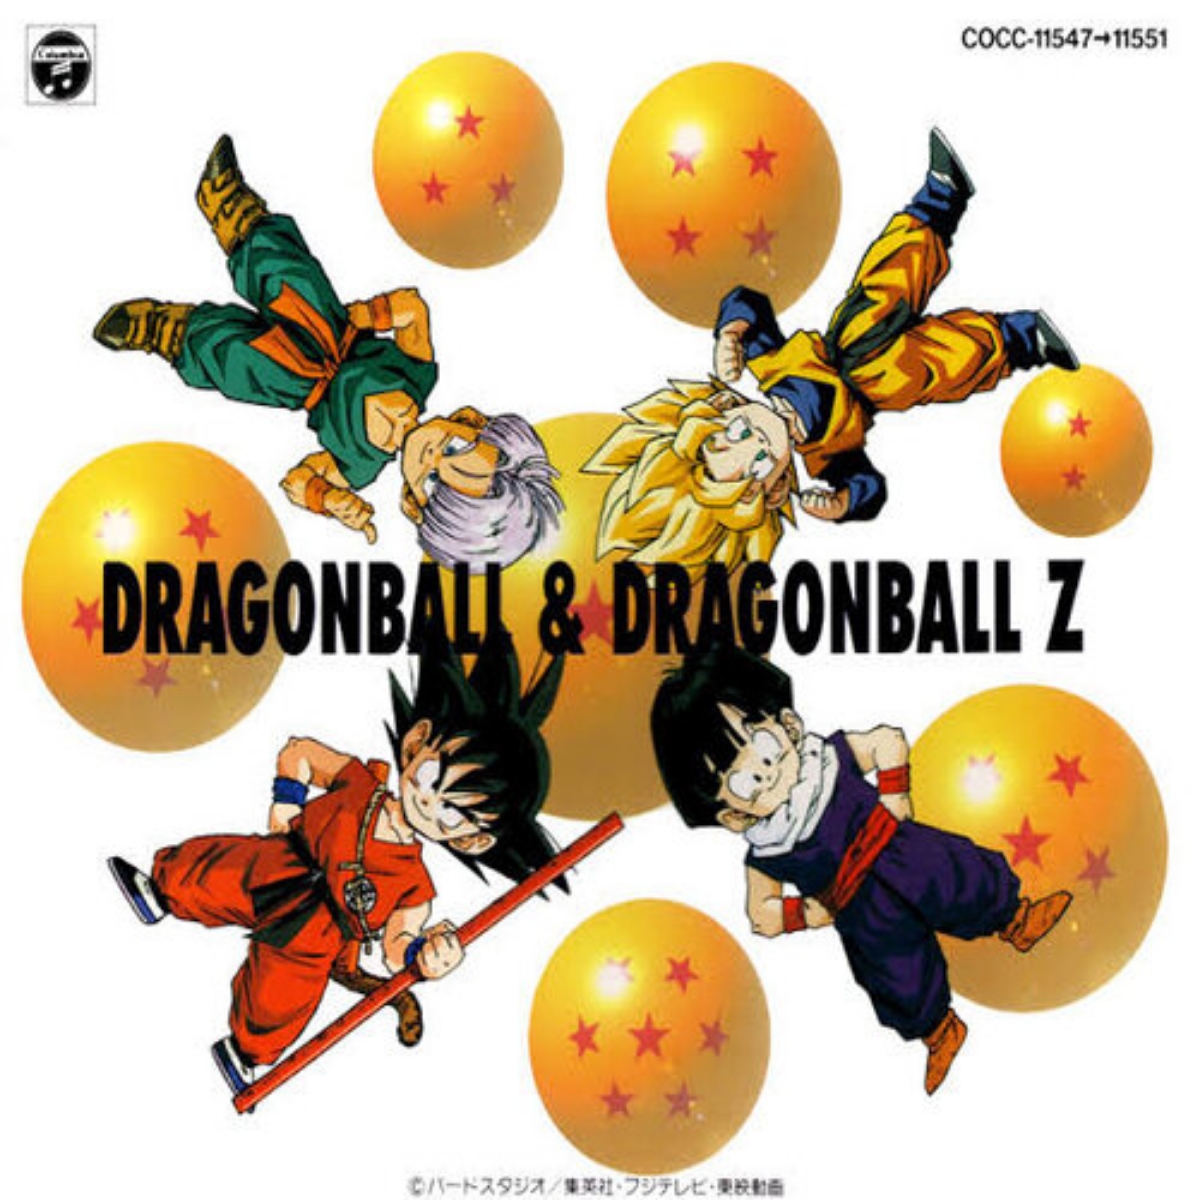 Dragon Ball & Dragon Ball Z Great Complete Collection - Osanime